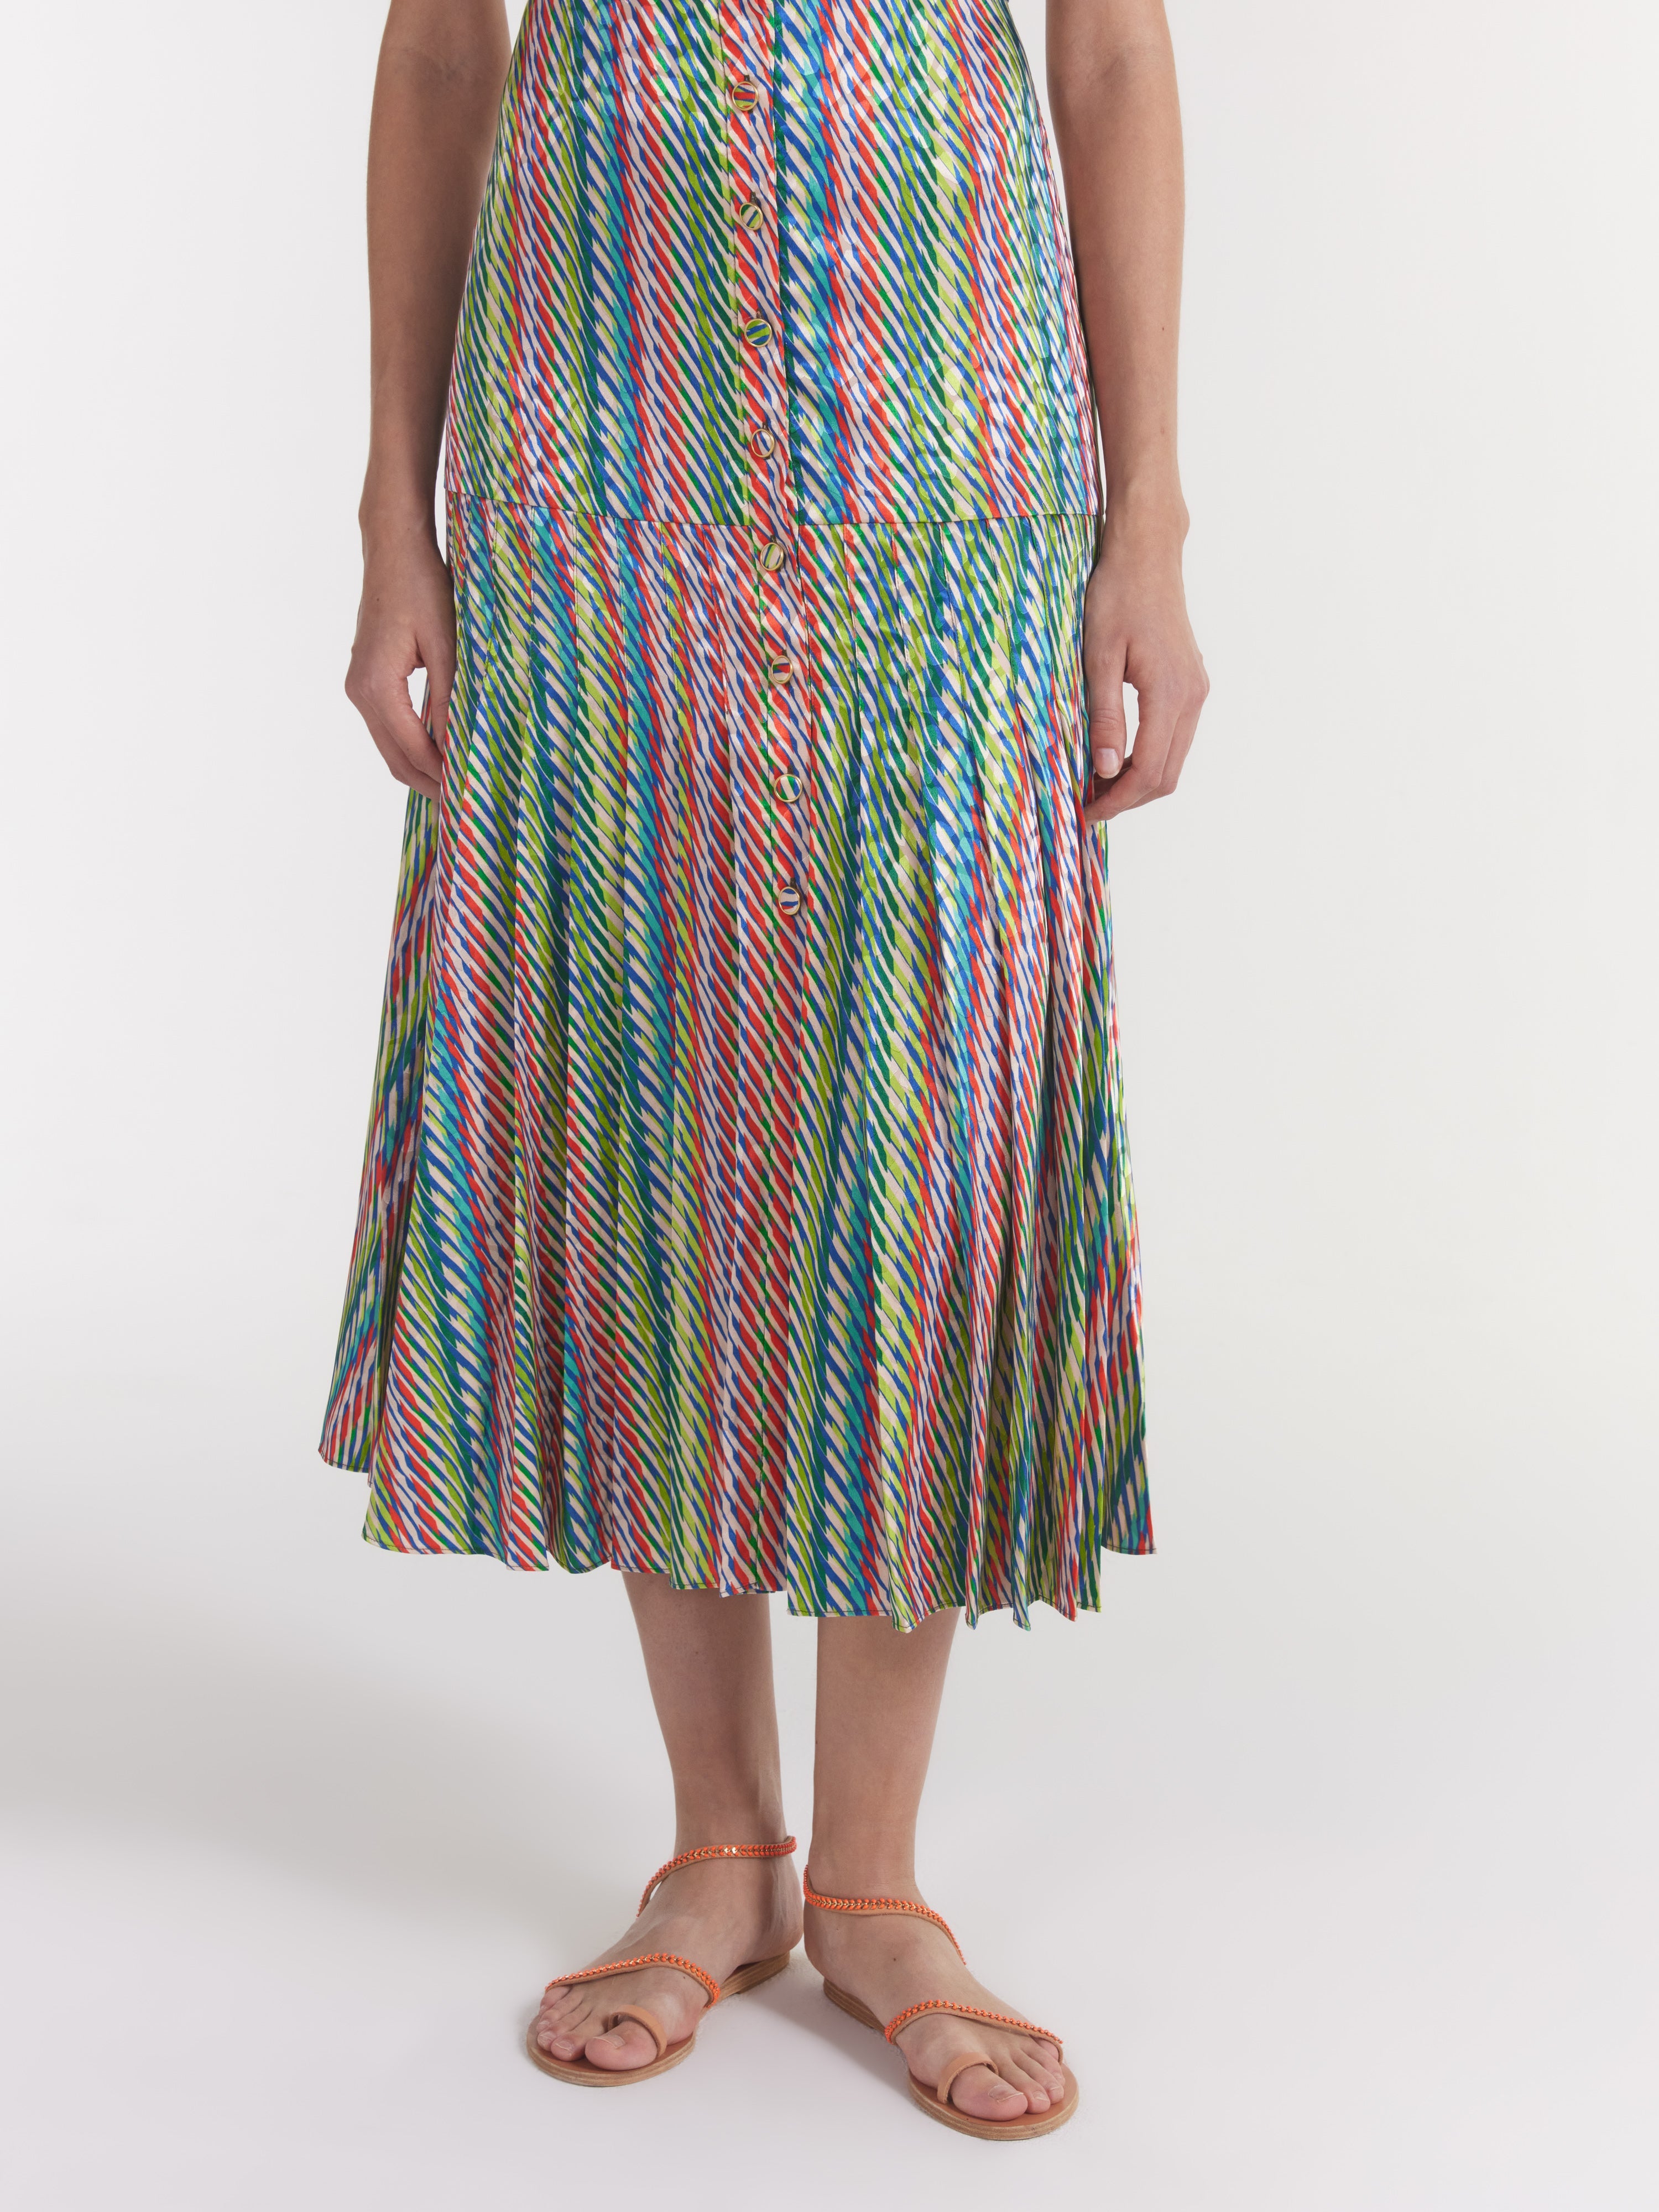 Karen Dress in Oblique Olive